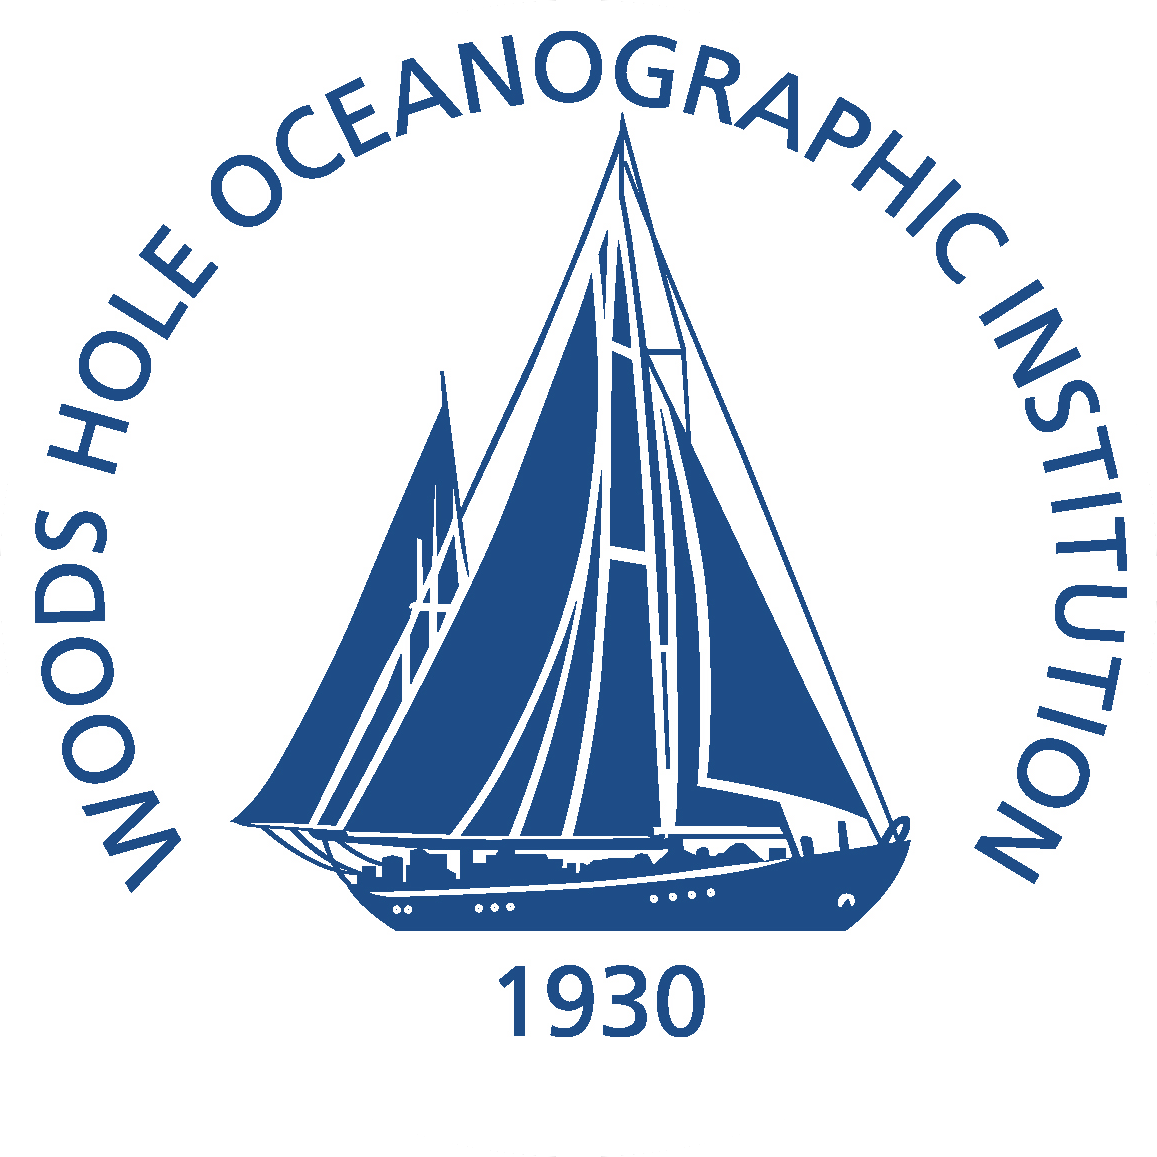 Woods Hole Oceanographic Institute (WHOI)